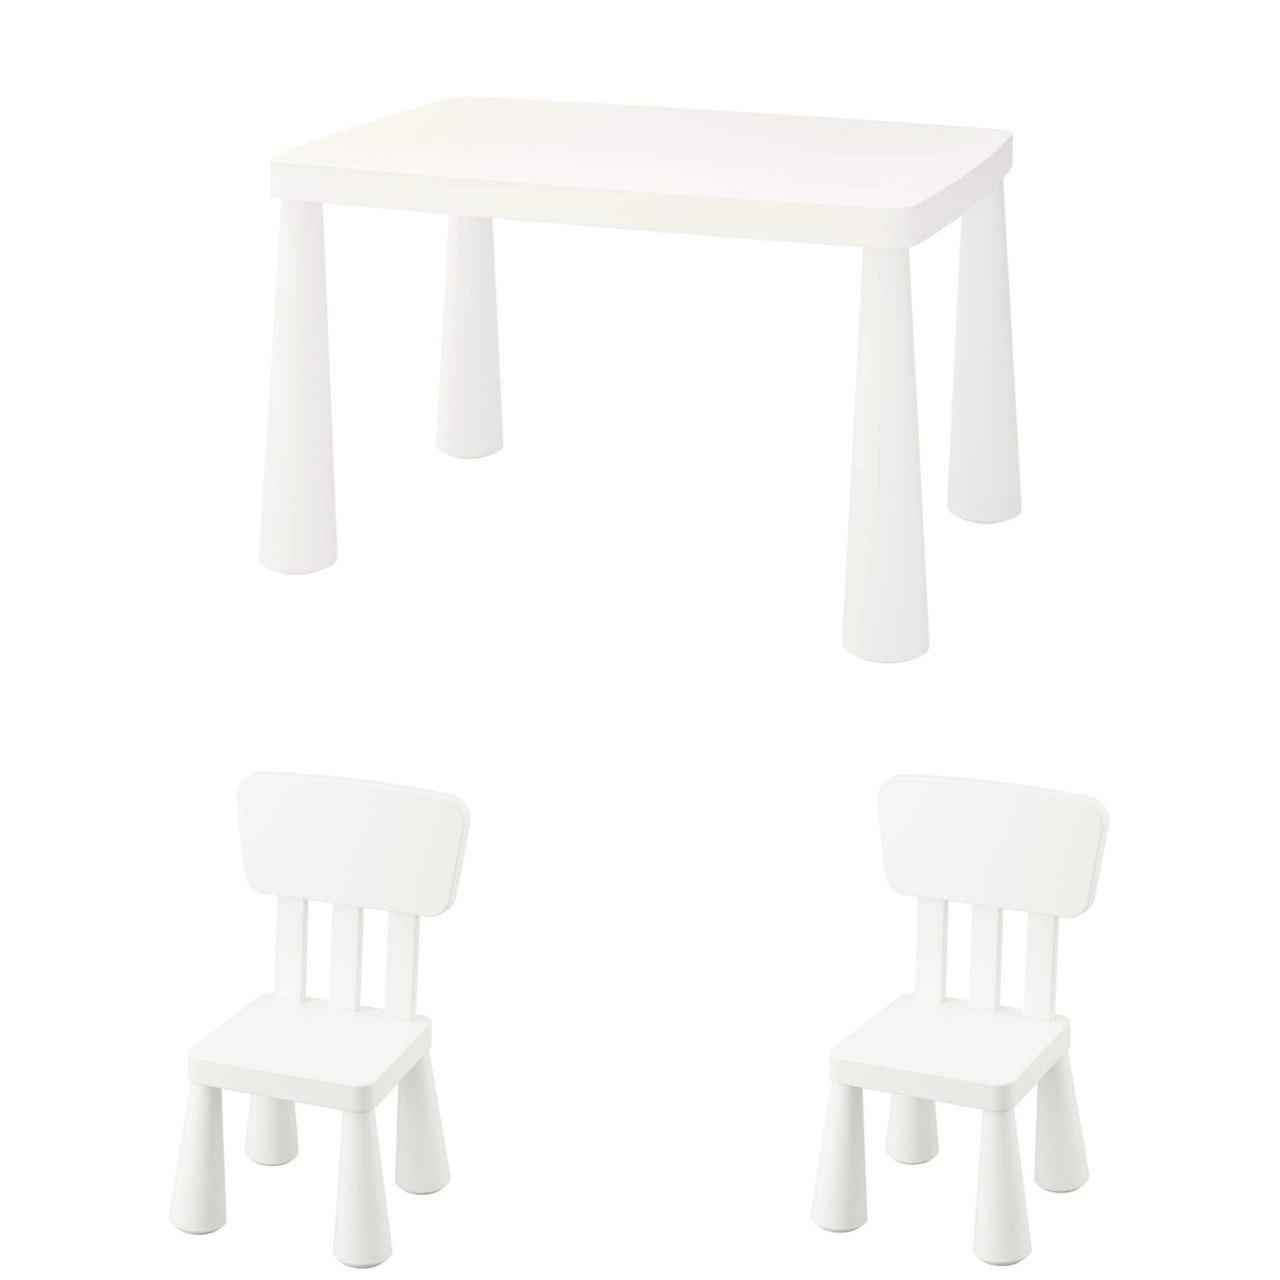 Набір! Дитячий стіл IKEA MAMMUT + 2 стільці IKEA MAMMUT. 3 предмети